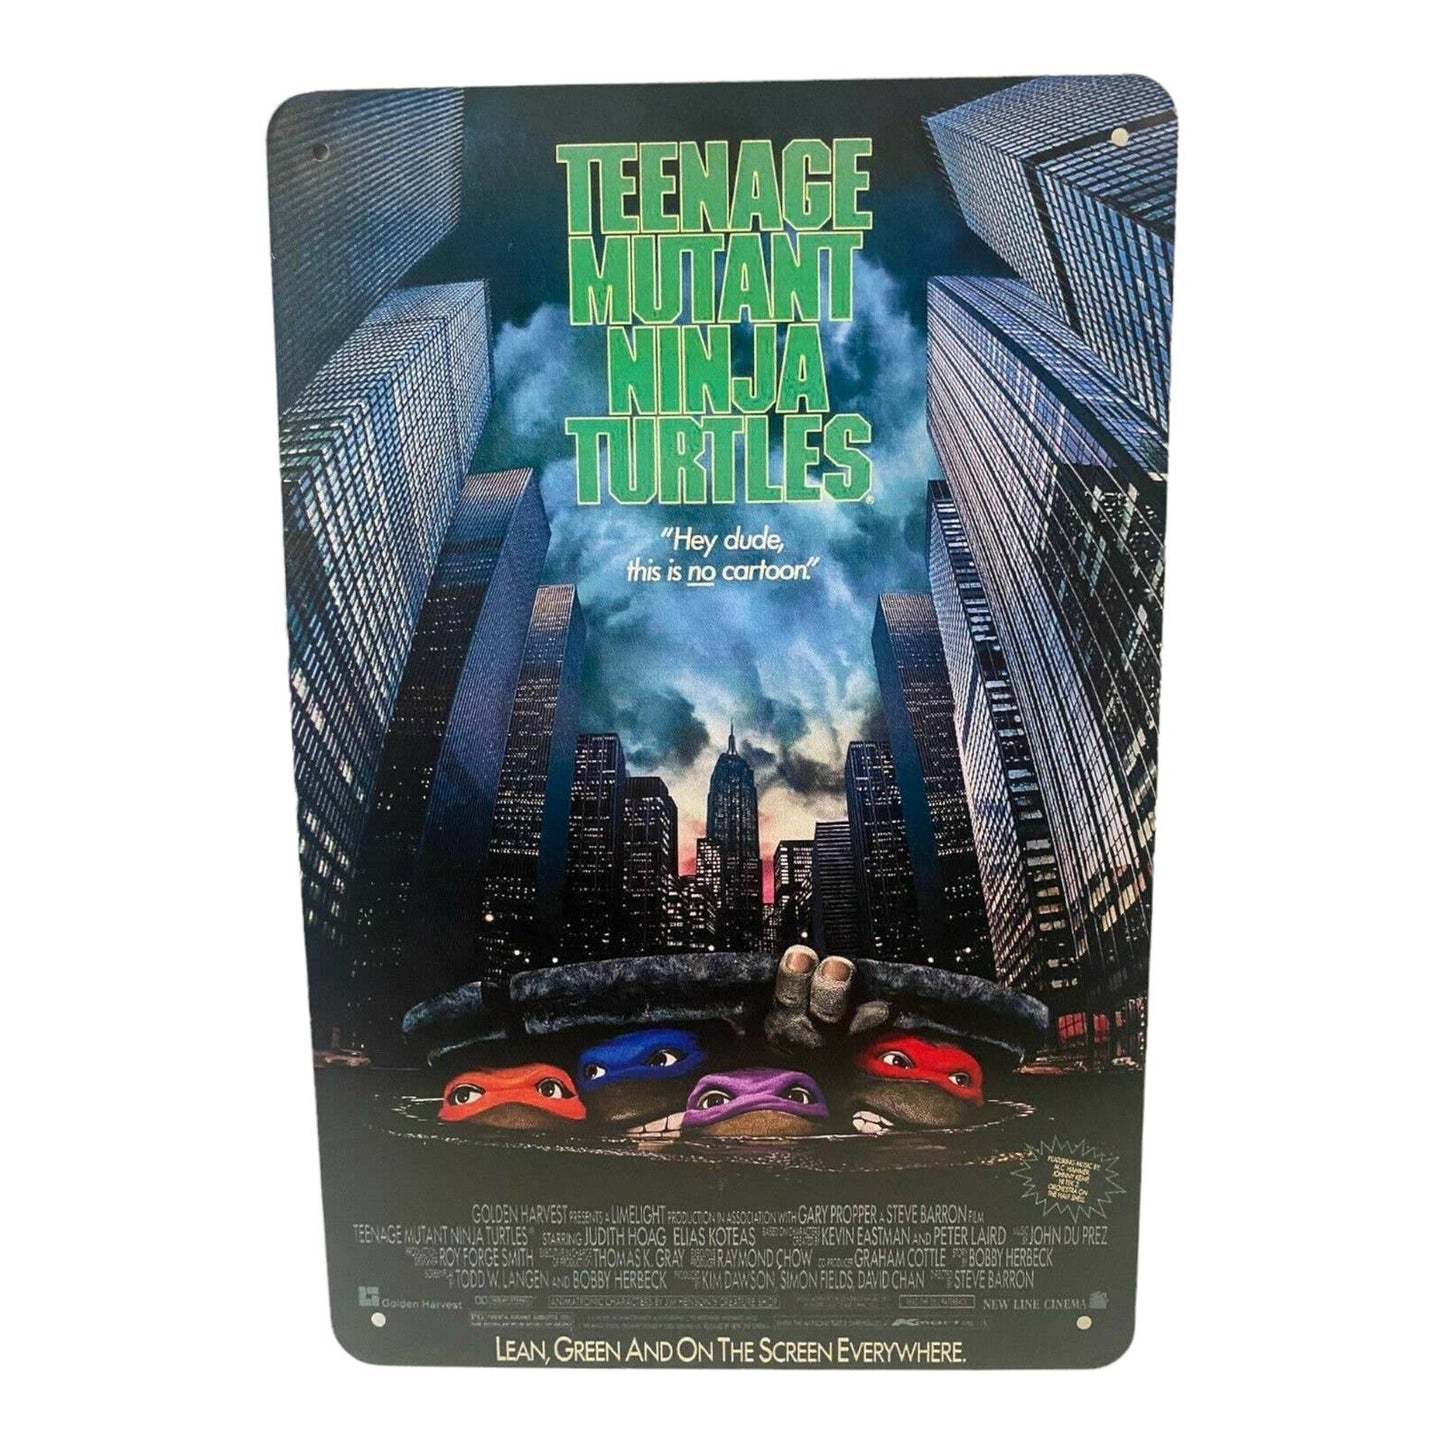 Teenage Mutant Ninja Turtles Movie Poster Metal Tin Sign 8"x12"